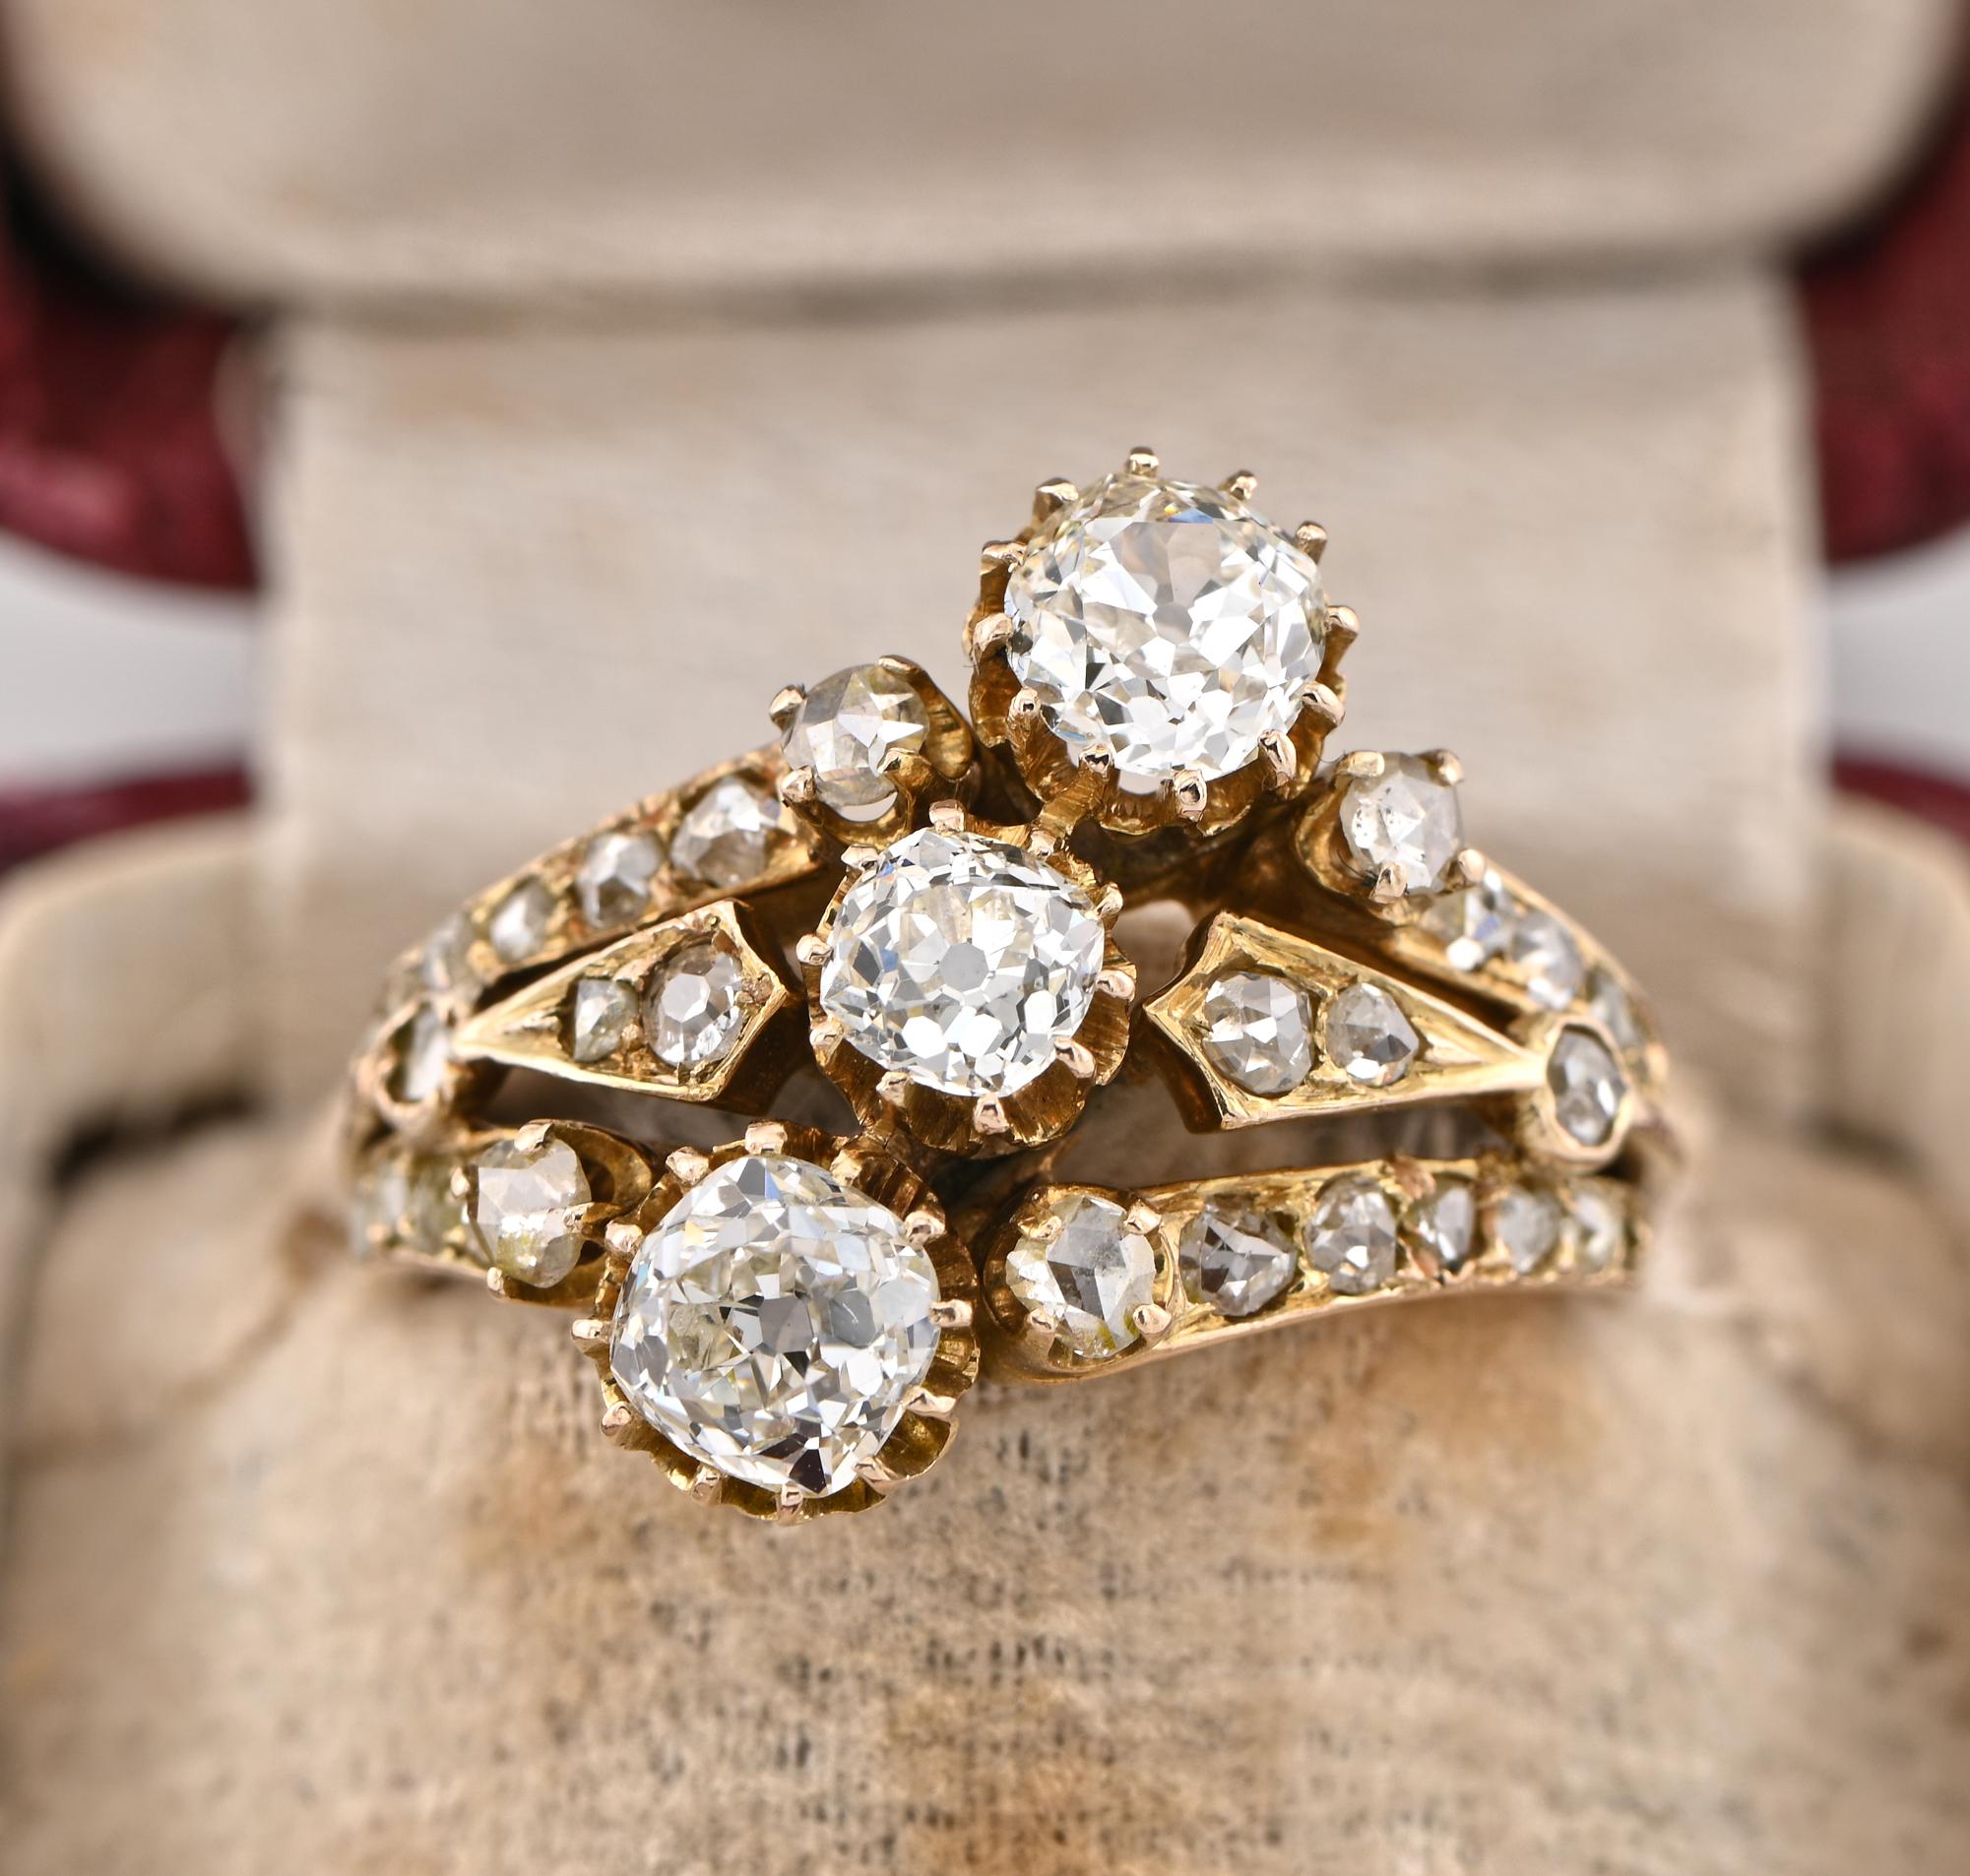 Seltener Fund
Dieser ganz außergewöhnliche antike Ring aus der viktorianischen Zeit ist die Verkörperung der Schönheit dieser Zeit, 1890/1900 ca
Prachtvolle viktorianische Handwerkskunst aus massivem 14-karätigem Gold in einer vornehmen Version des